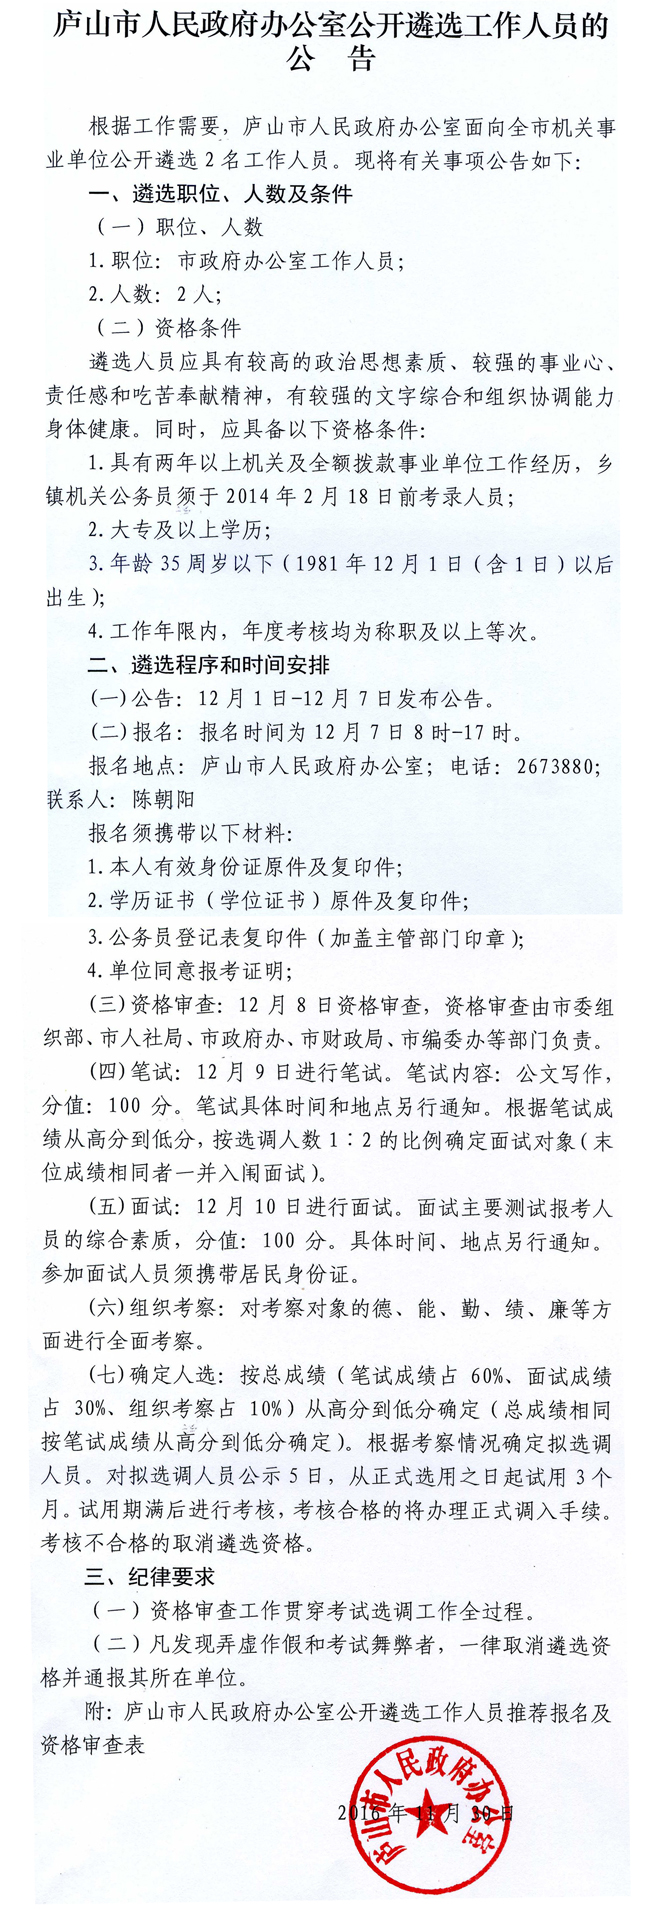 庐山市人民政府办公室公开遴选工作人员的公告.jpg